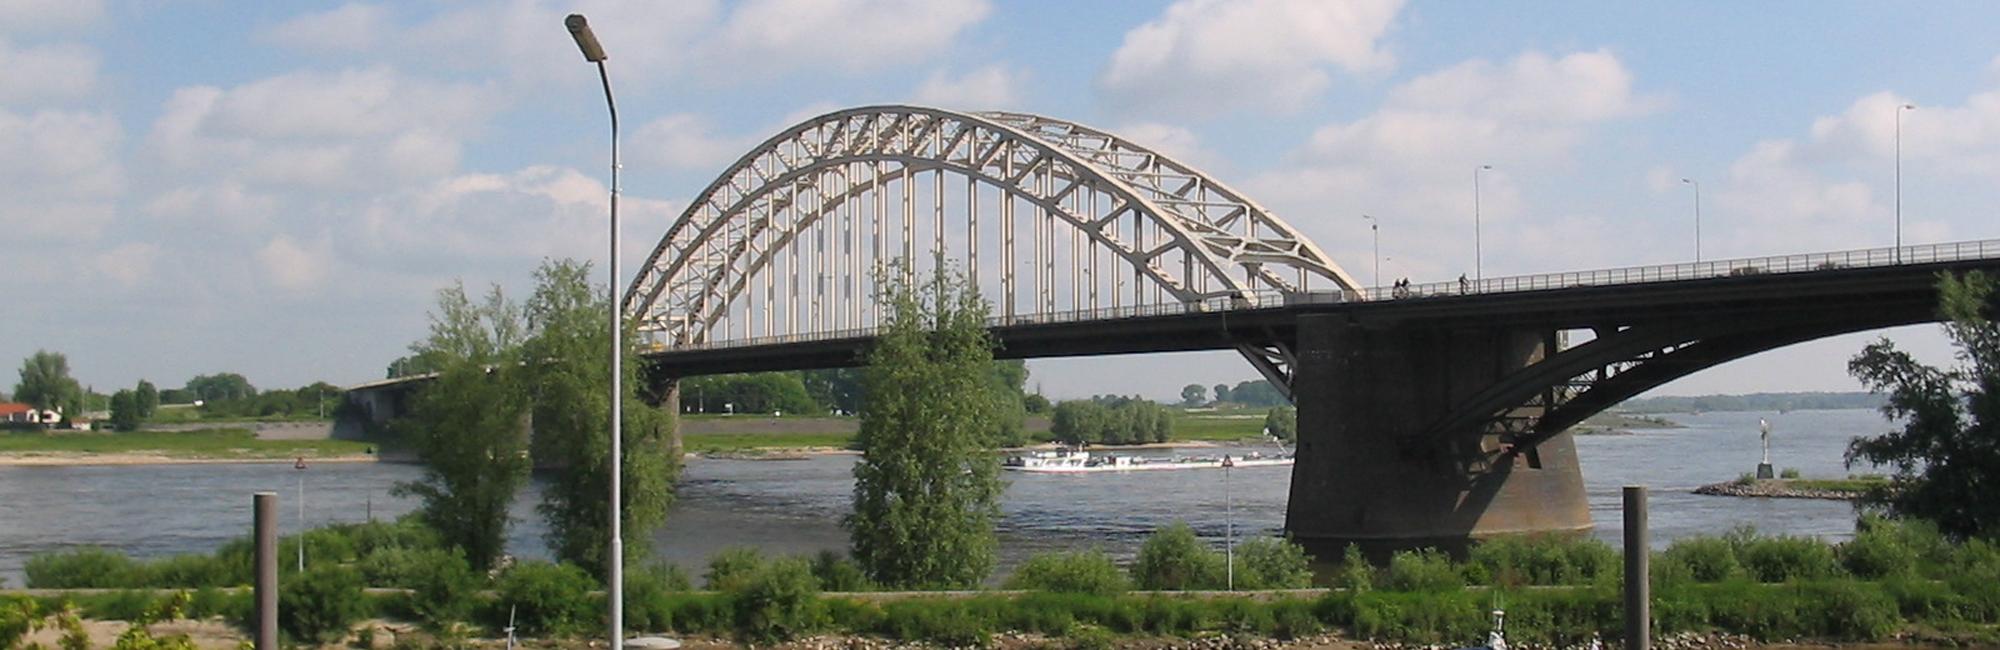 Maasroute Fietsvakantie - van Maastricht naar Nijmegen fietsen